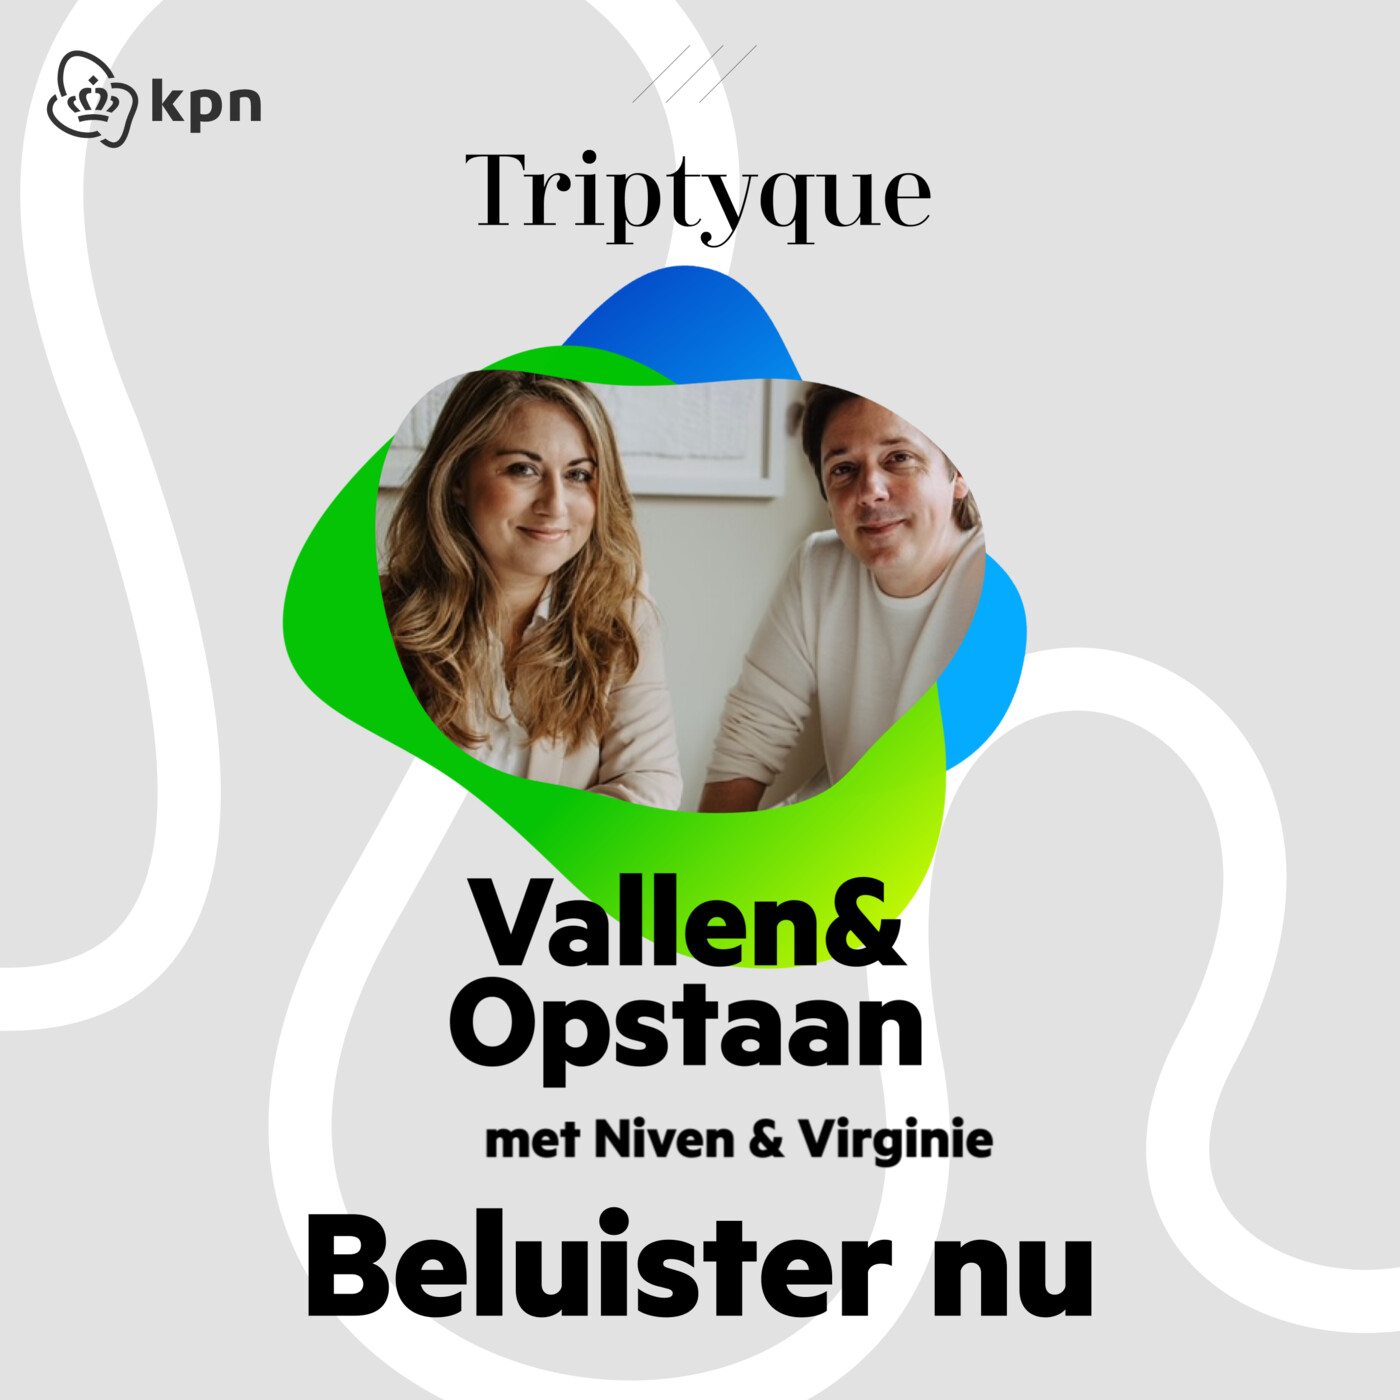 Niven & Virginie (Triptyque) - Failliet door corona maar doorstarten met groene Michelinster